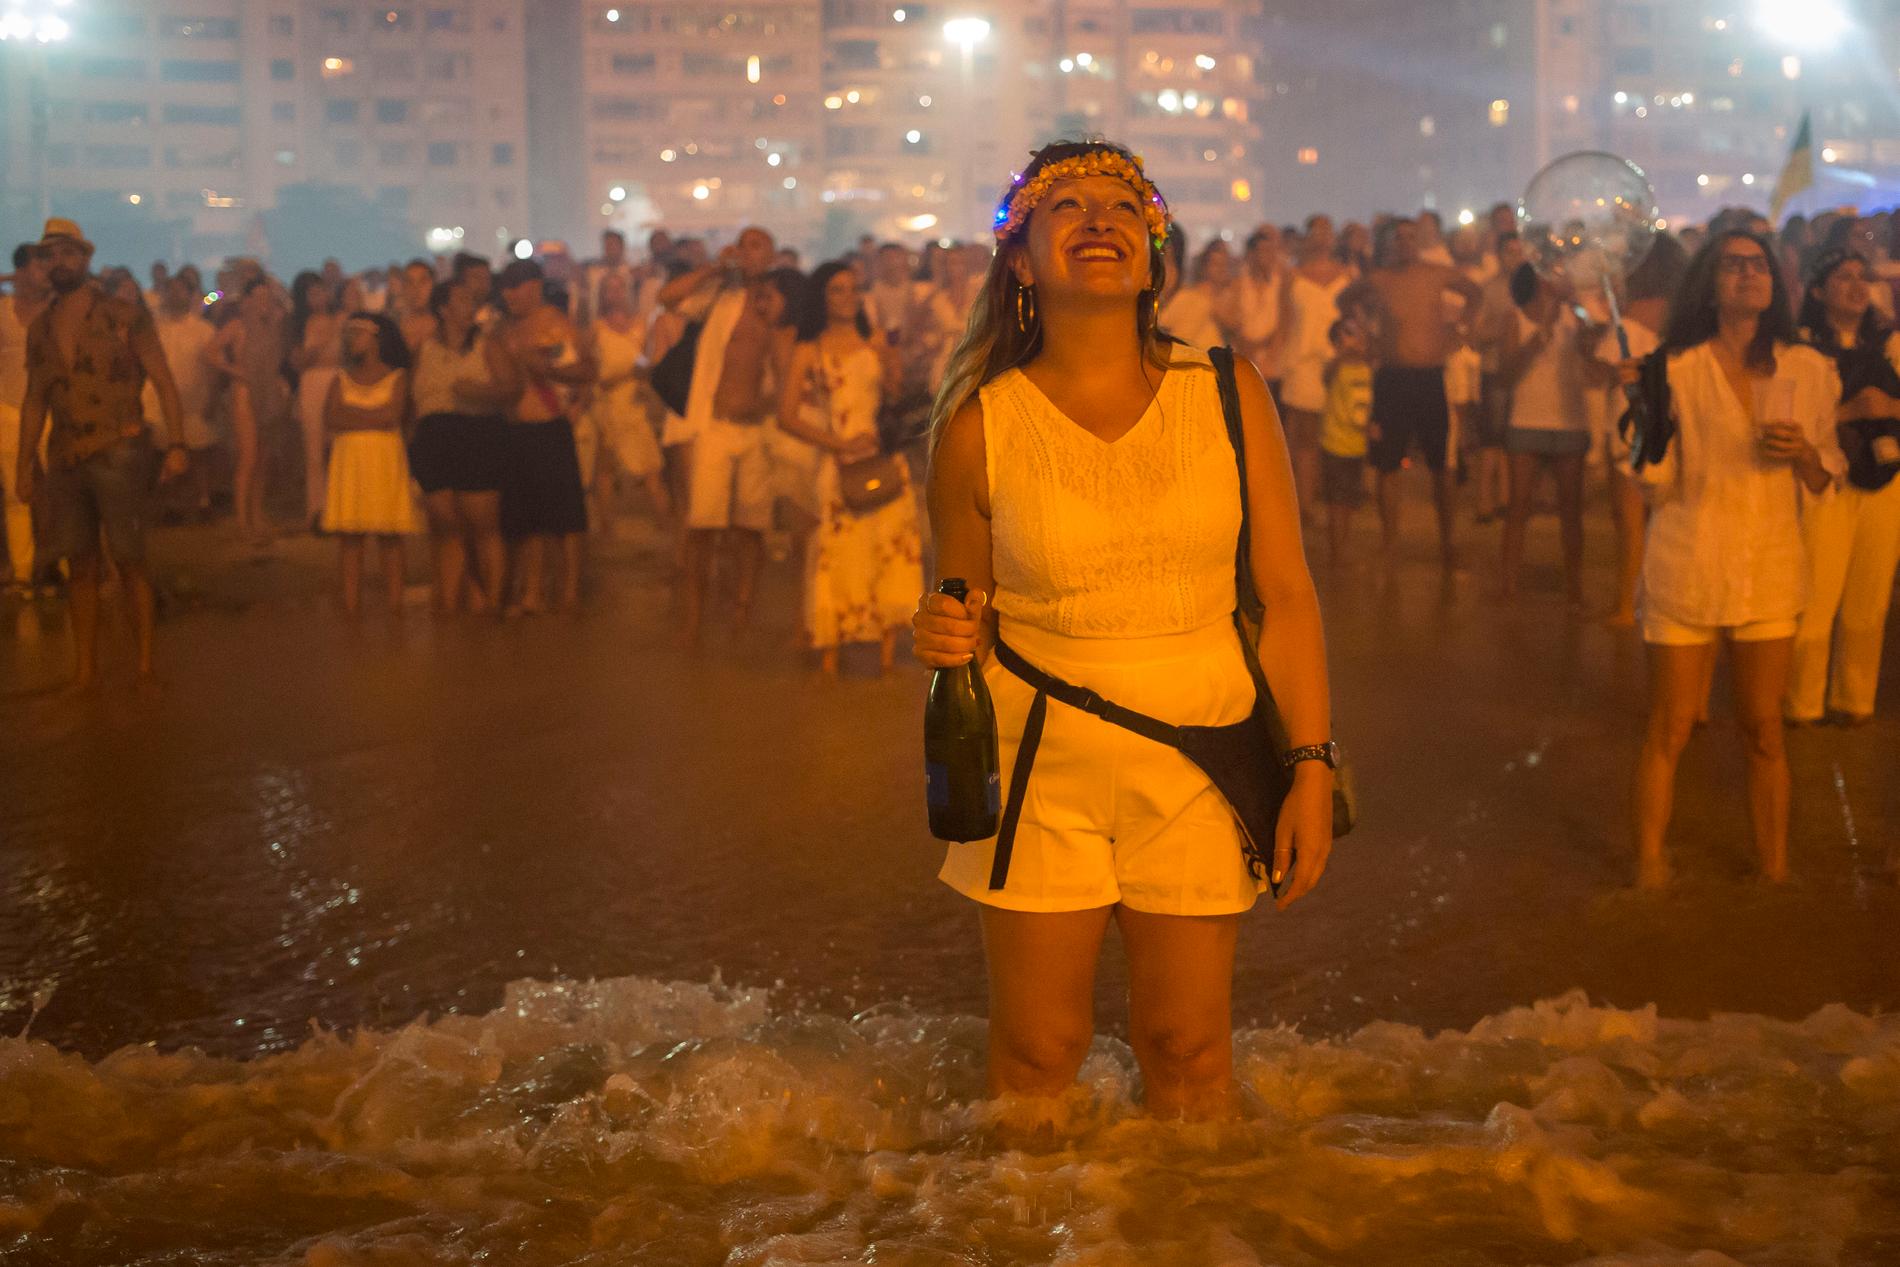 Så här såg det ut på Copacabana när 2019 blev 2020.